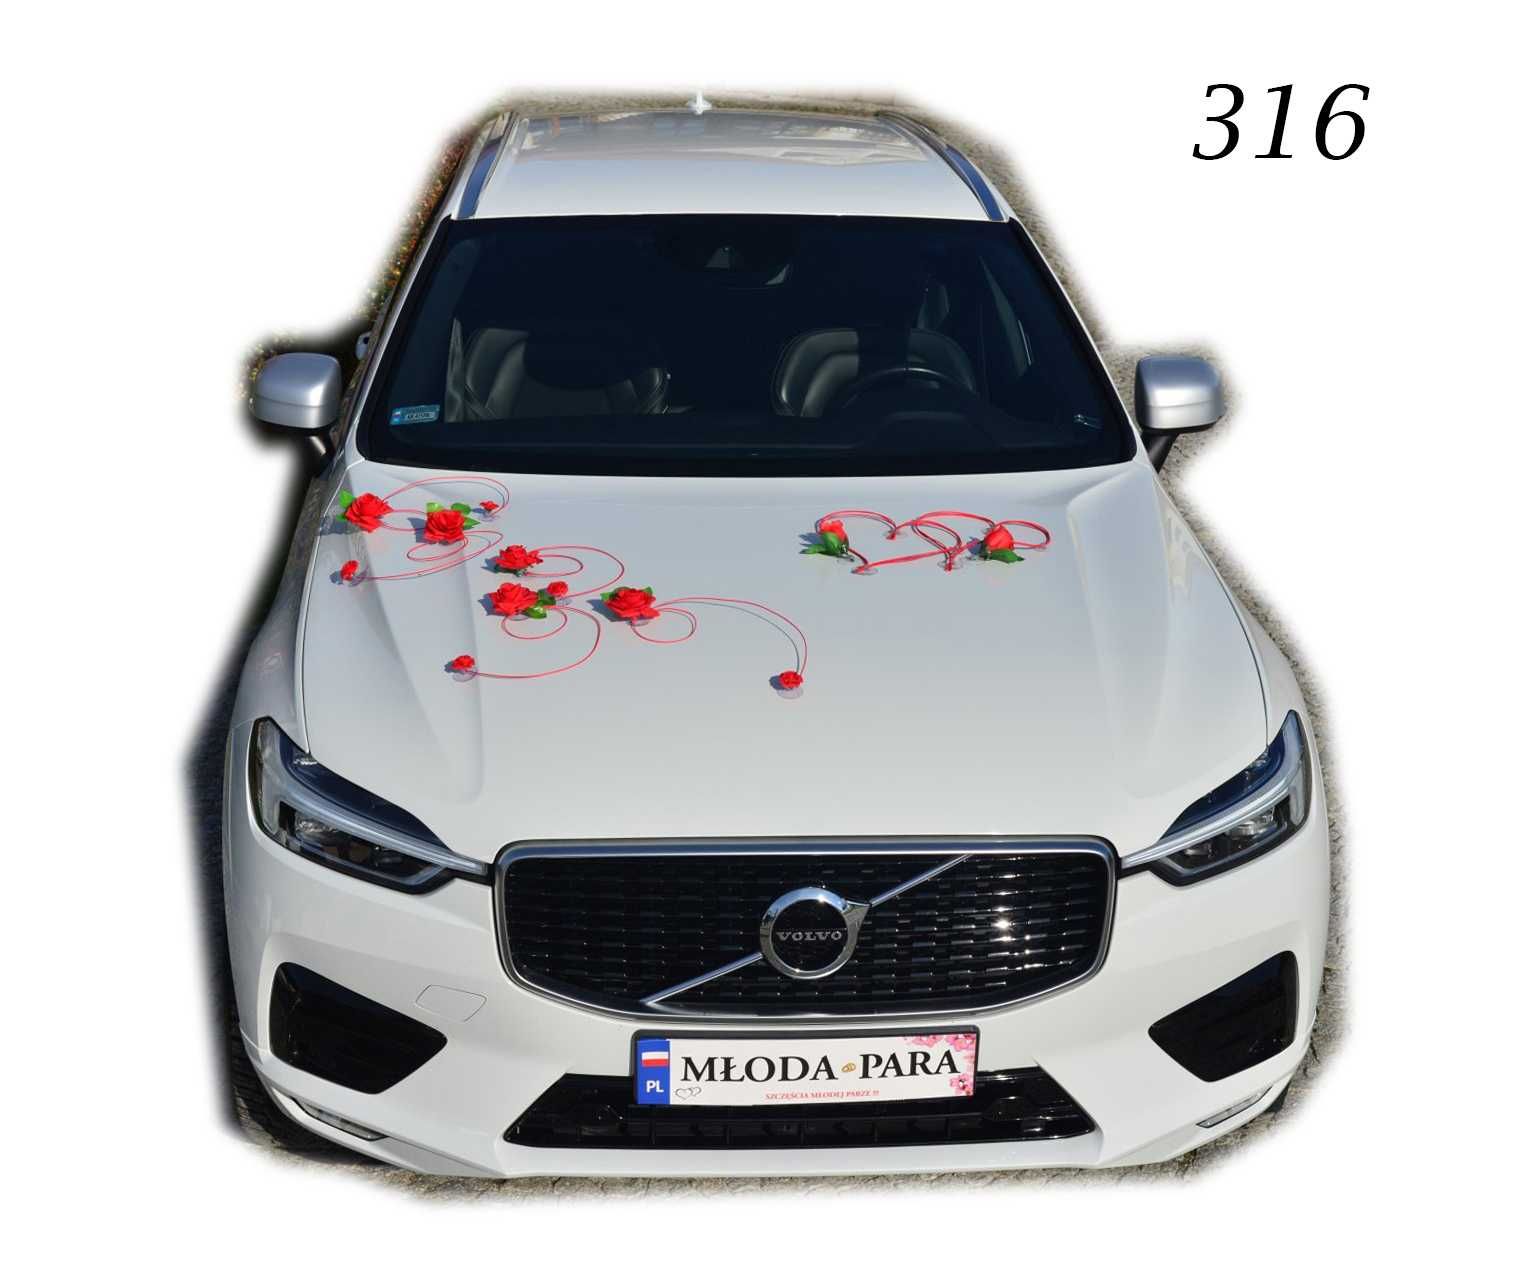 Dekoracja na samochód ślubny kwiaty ozdoby na auto 316